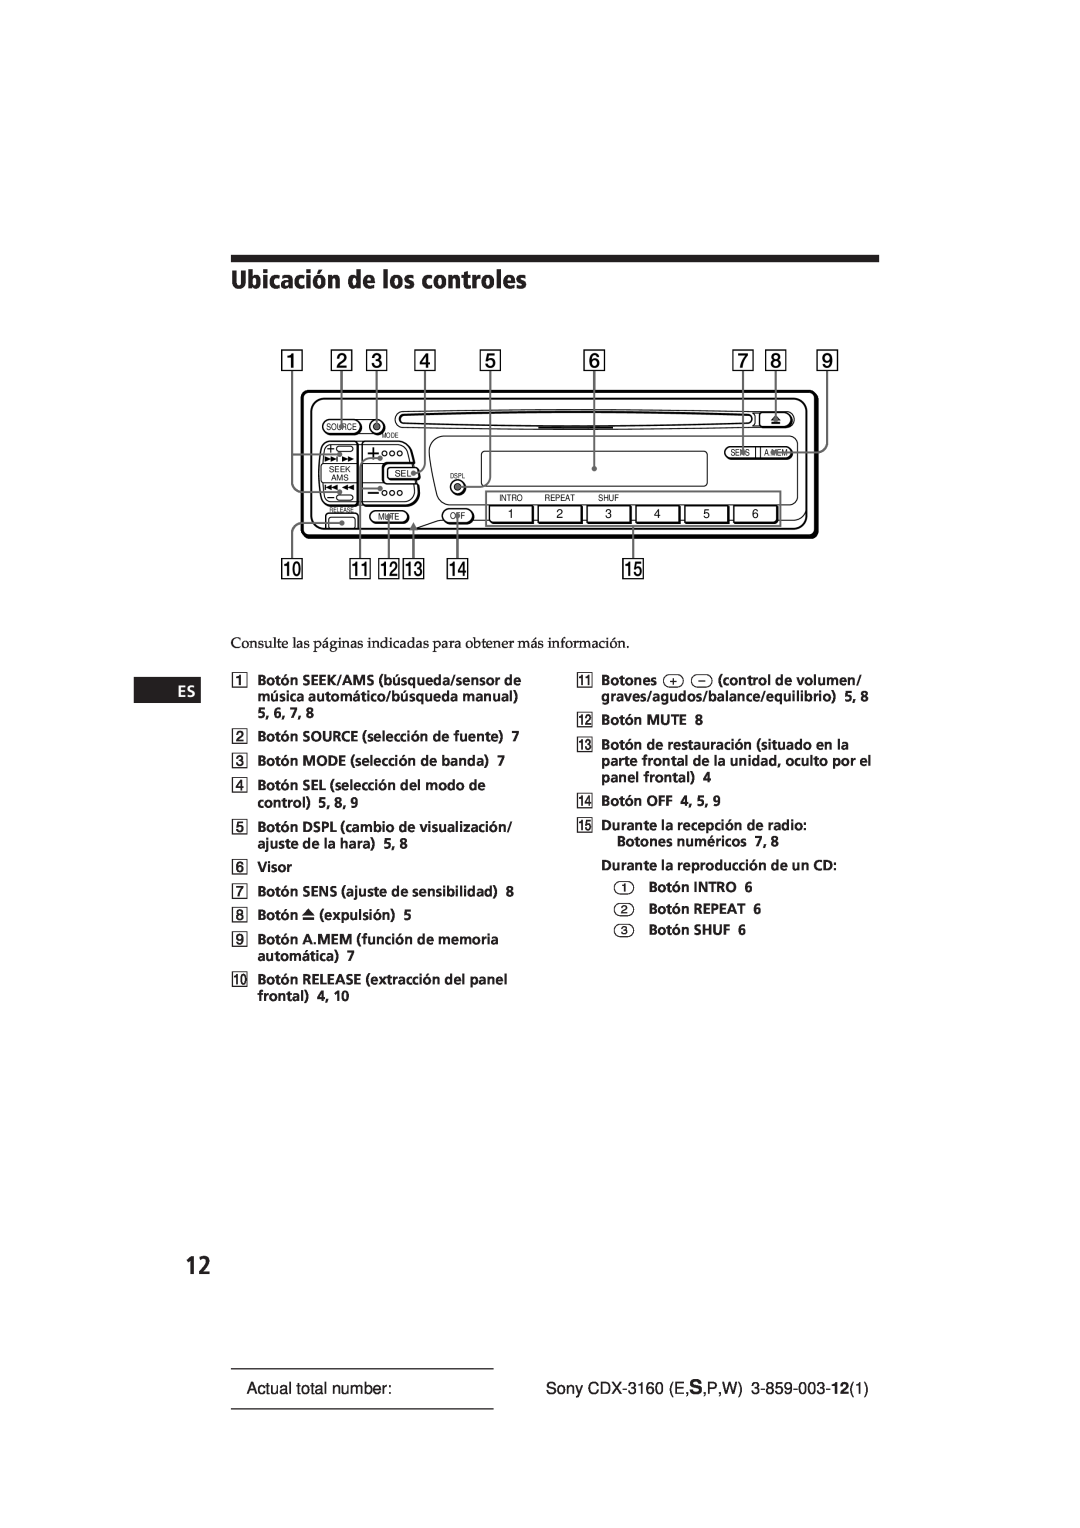 Sony manual Ubicación de los controles, Actual total number, Sony CDX-3160E,S,P,W 